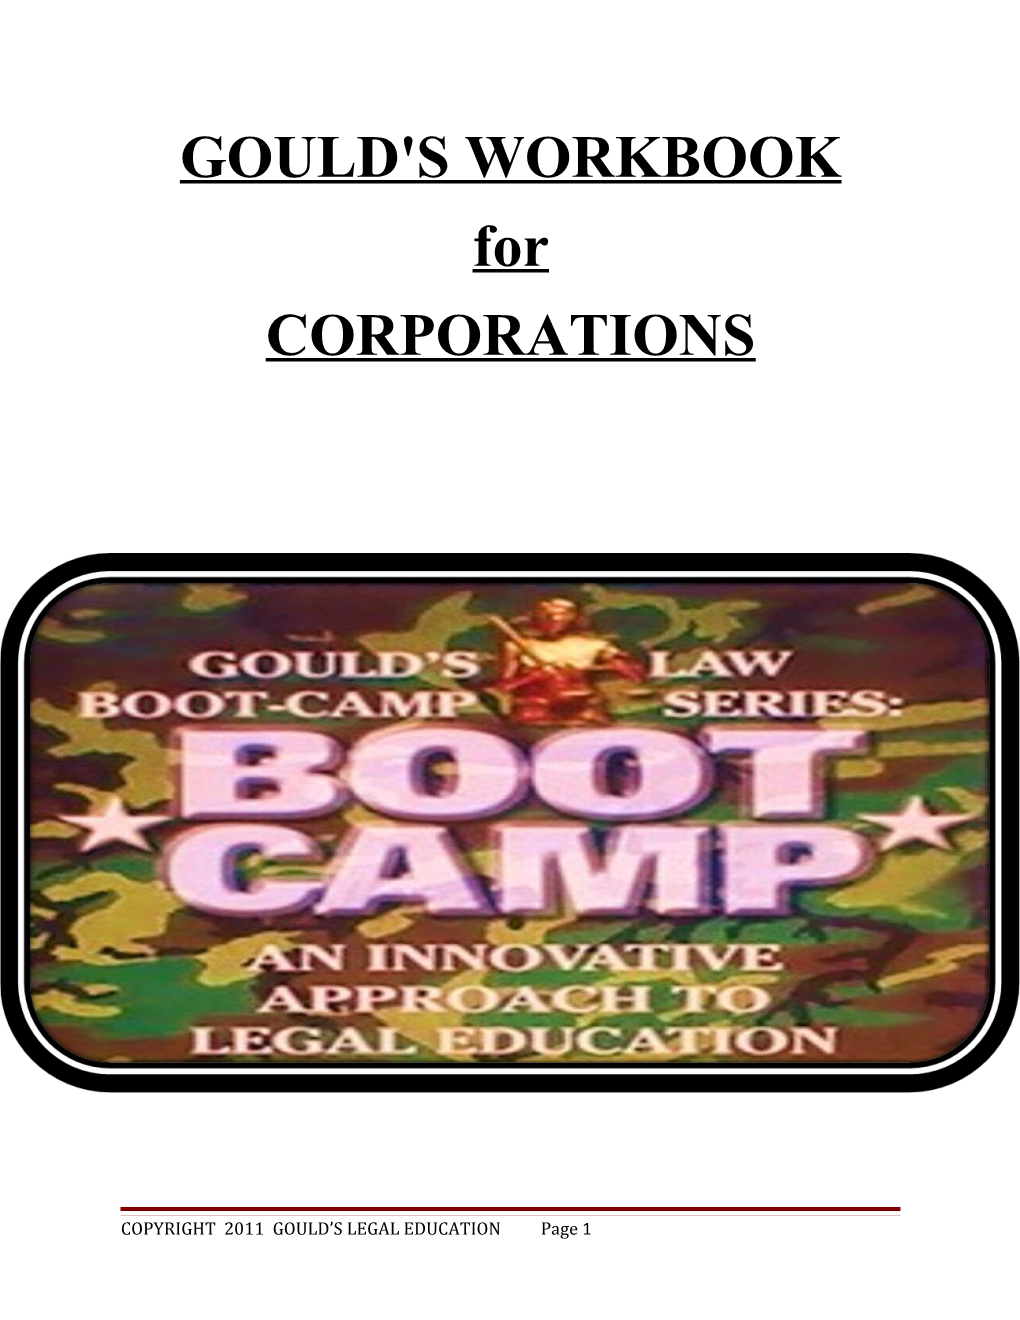 Gould's Workbook